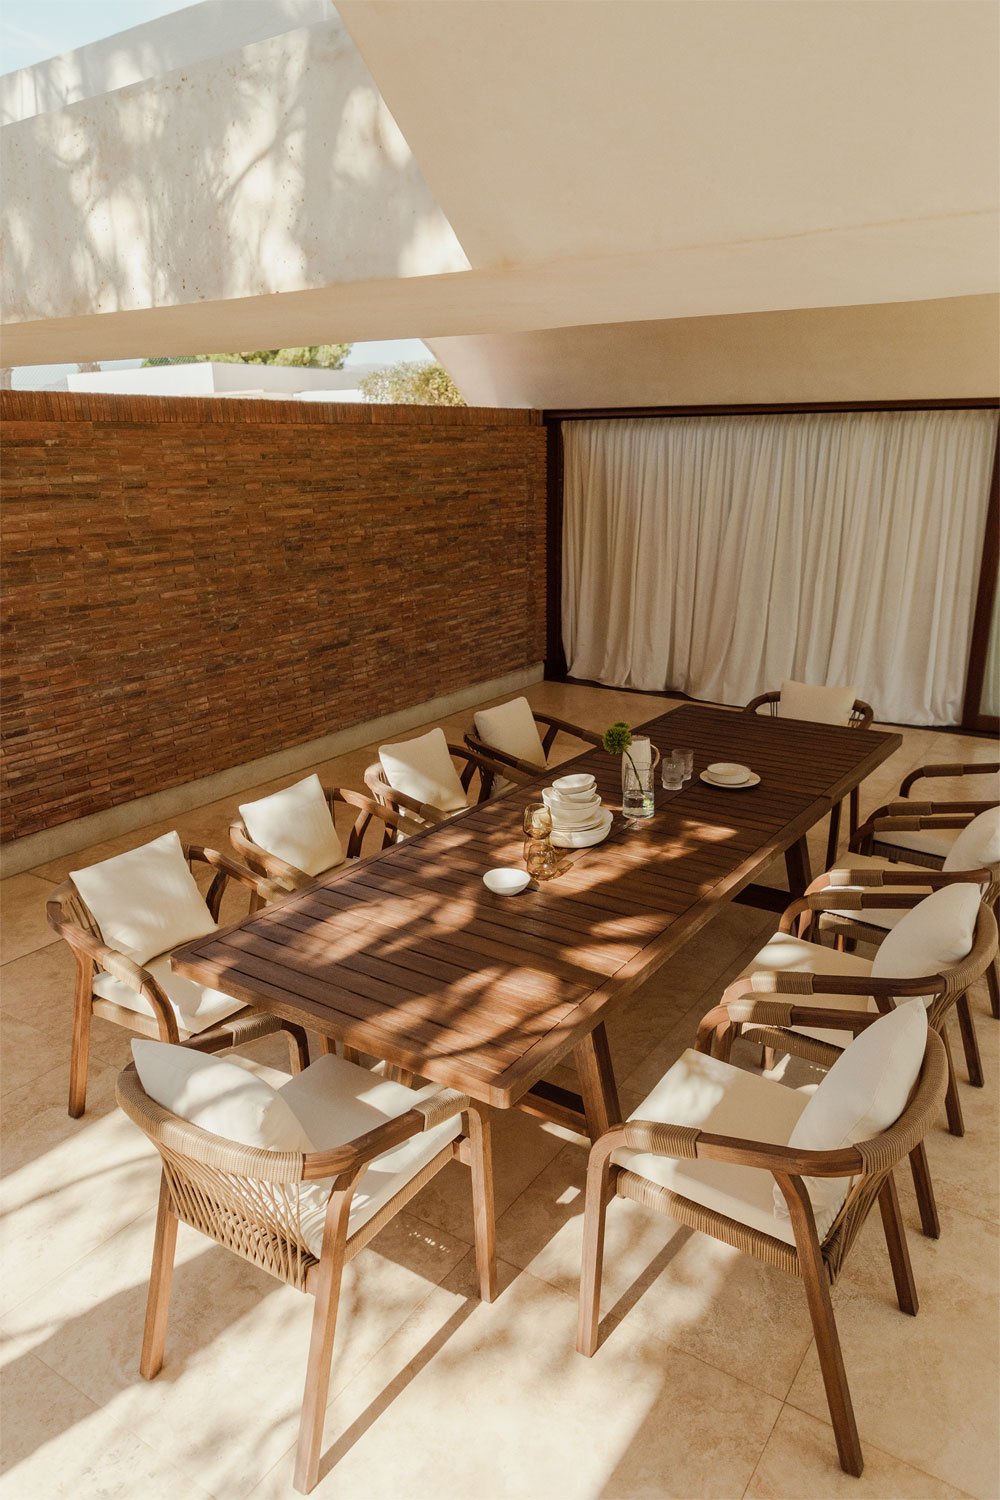 Dubai rectangular extendable acacia wood garden table  (200-300x100 cm), gallery image 1